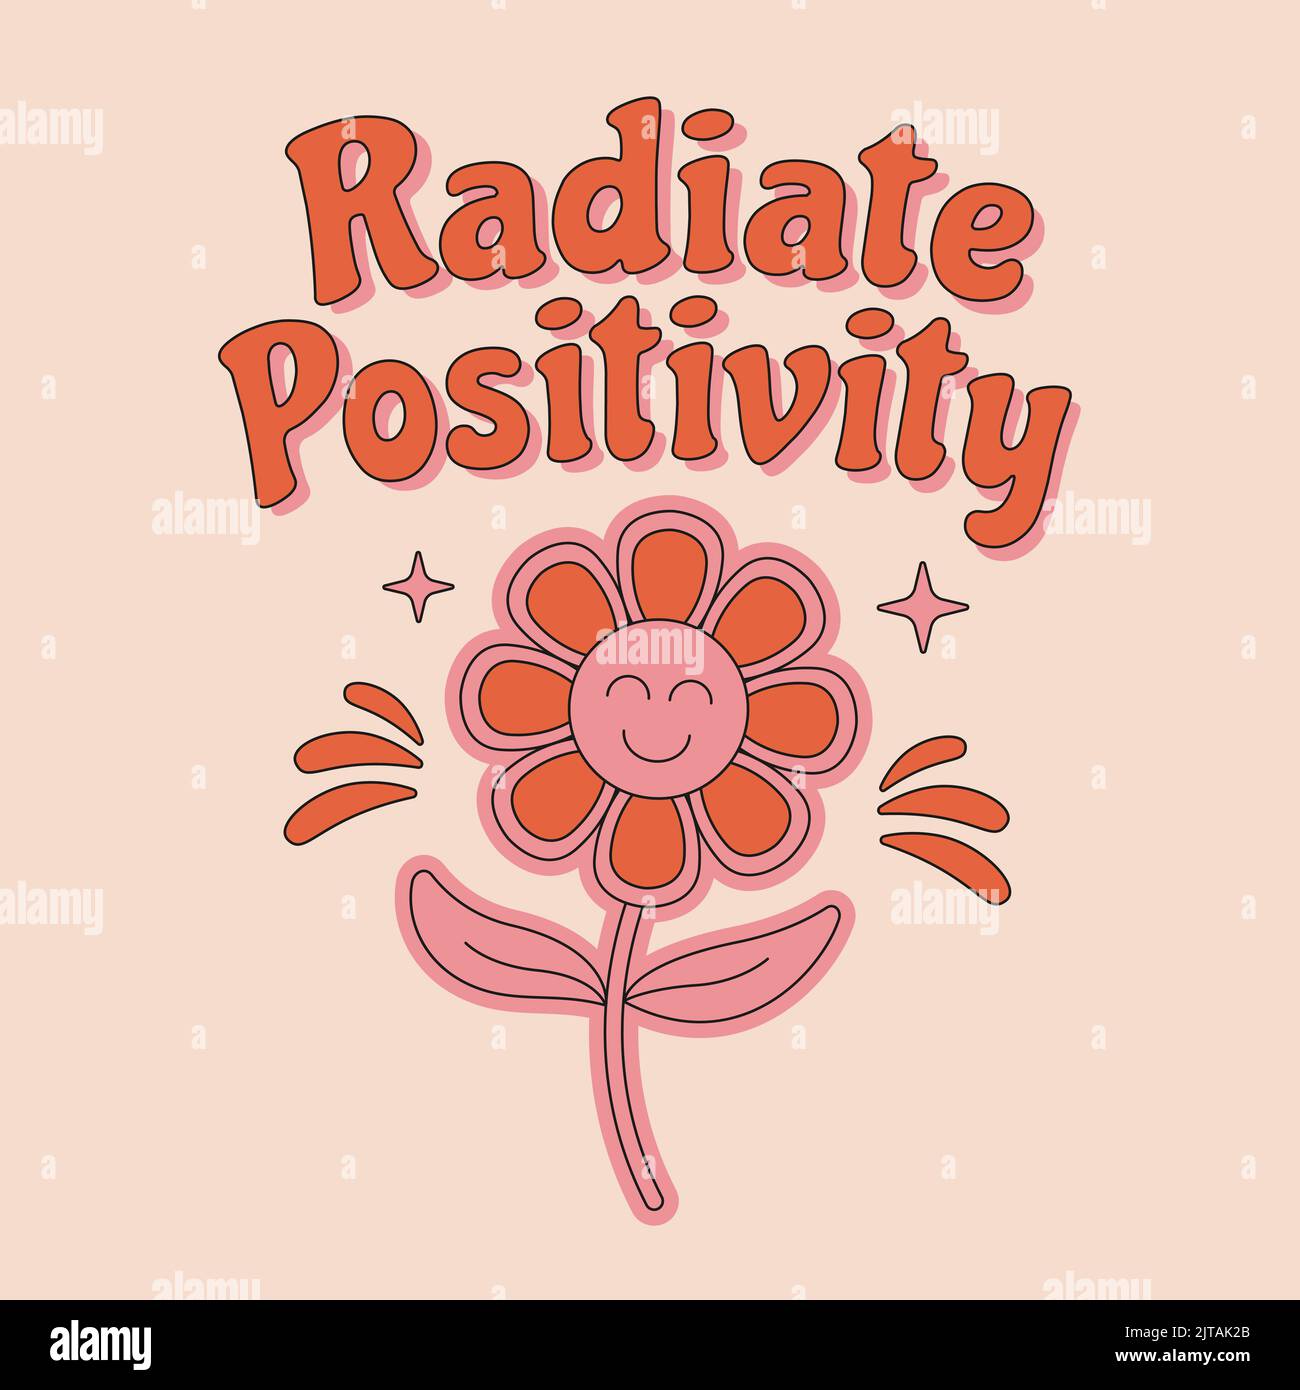 70s Retro-Hippie-inspirierender „Radiate Positivity“-Slogan mit niedlicher Blume für T-Shirts, Poster, Karten. Vektorgrafik. Stock Vektor